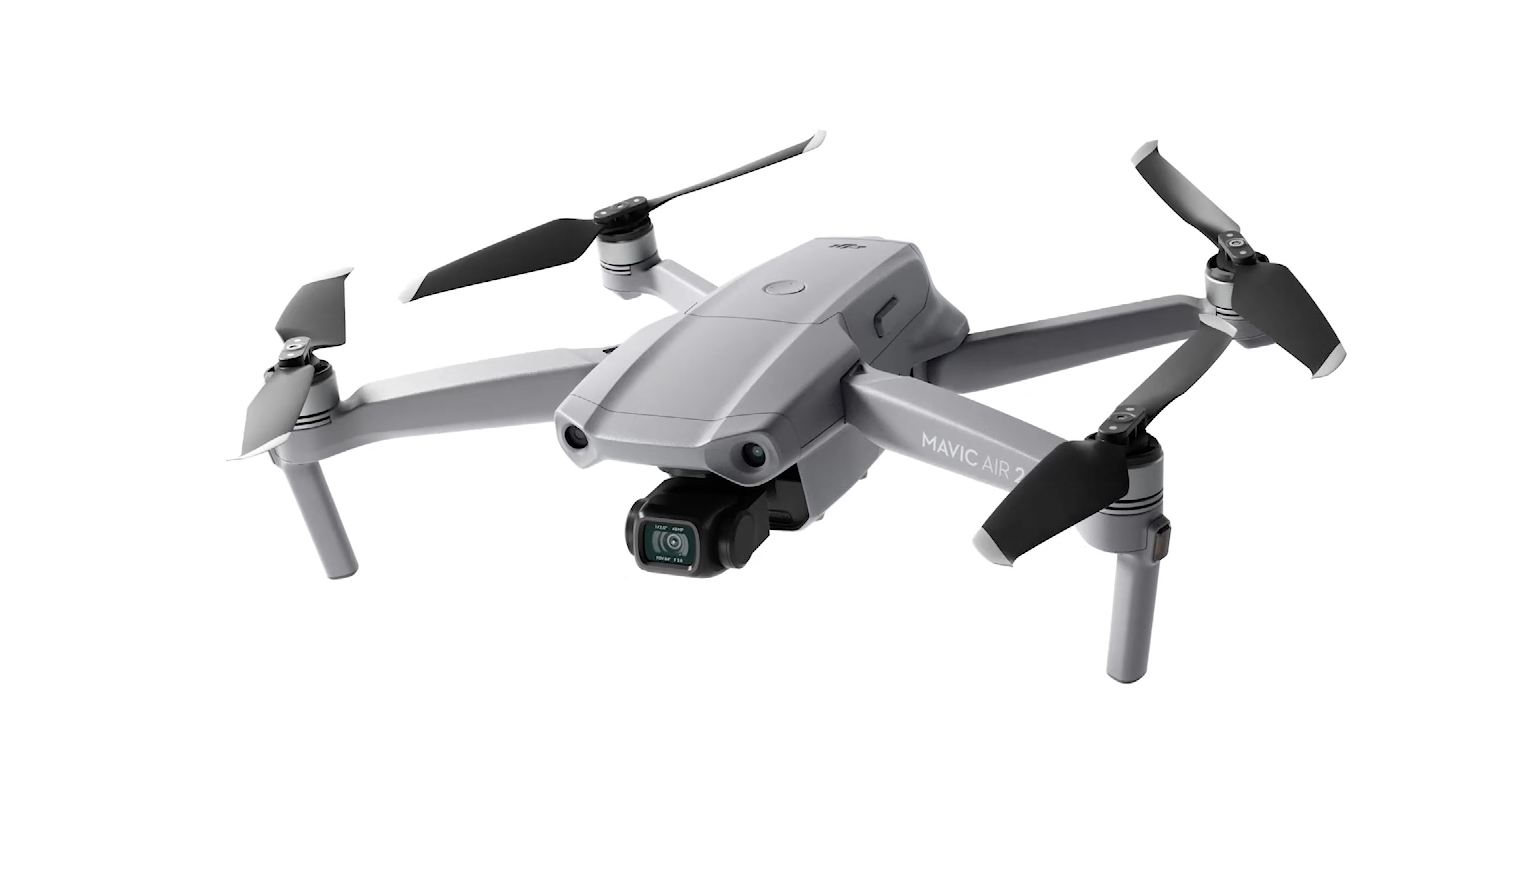 MAVIC Air 2 drone pic 2